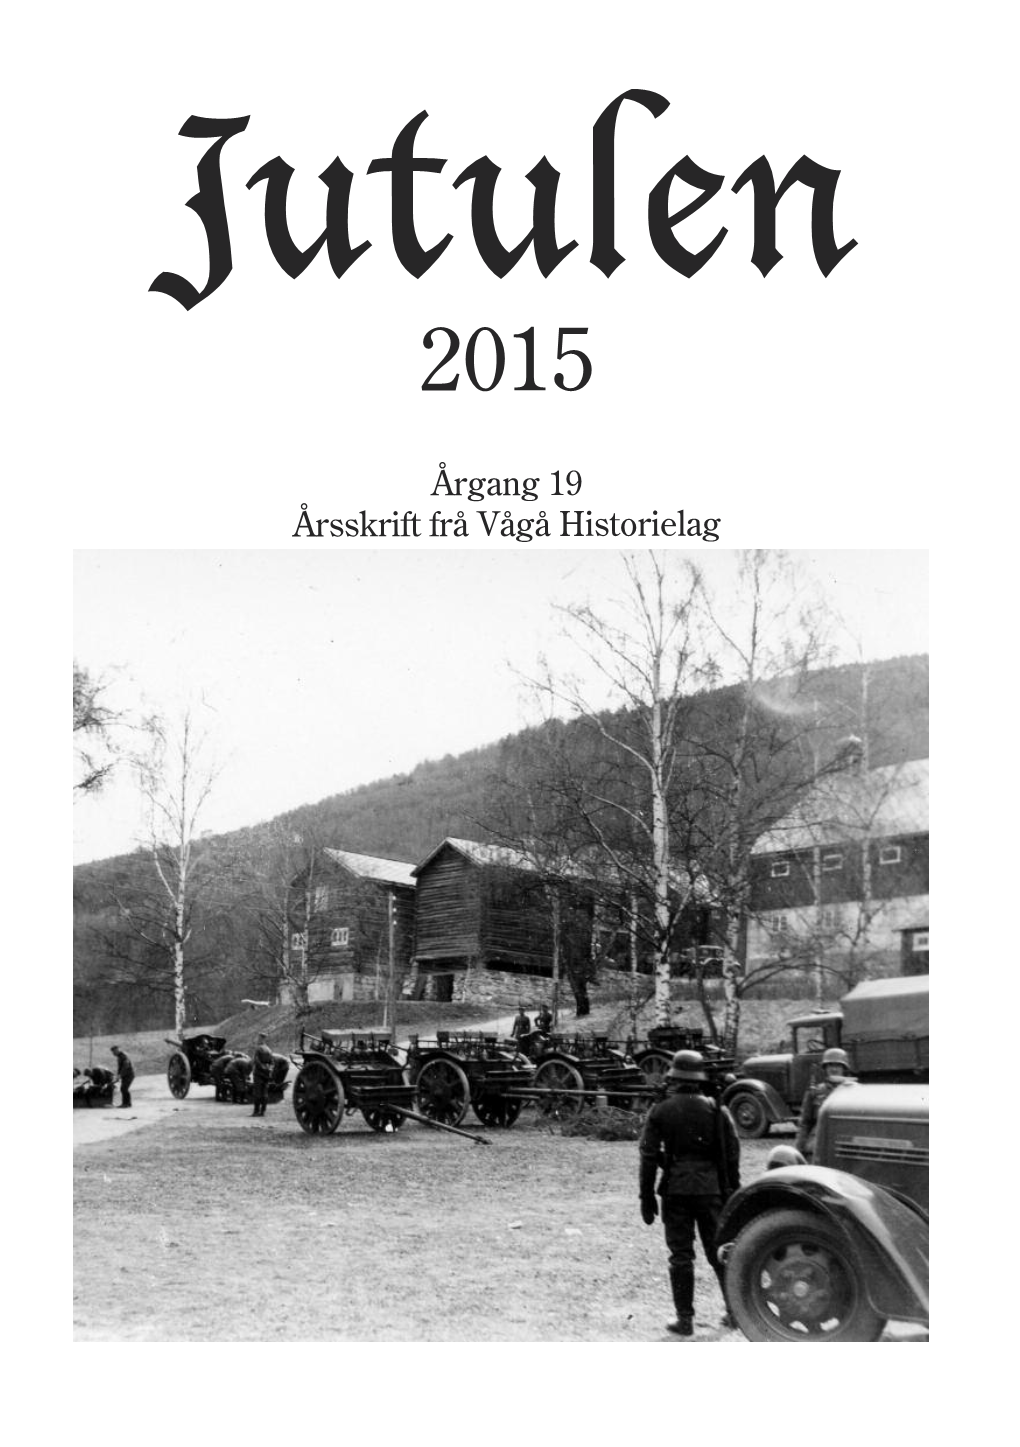 Årgang 19 Årsskrift Frå Vågå Historielag Jutulen 2015